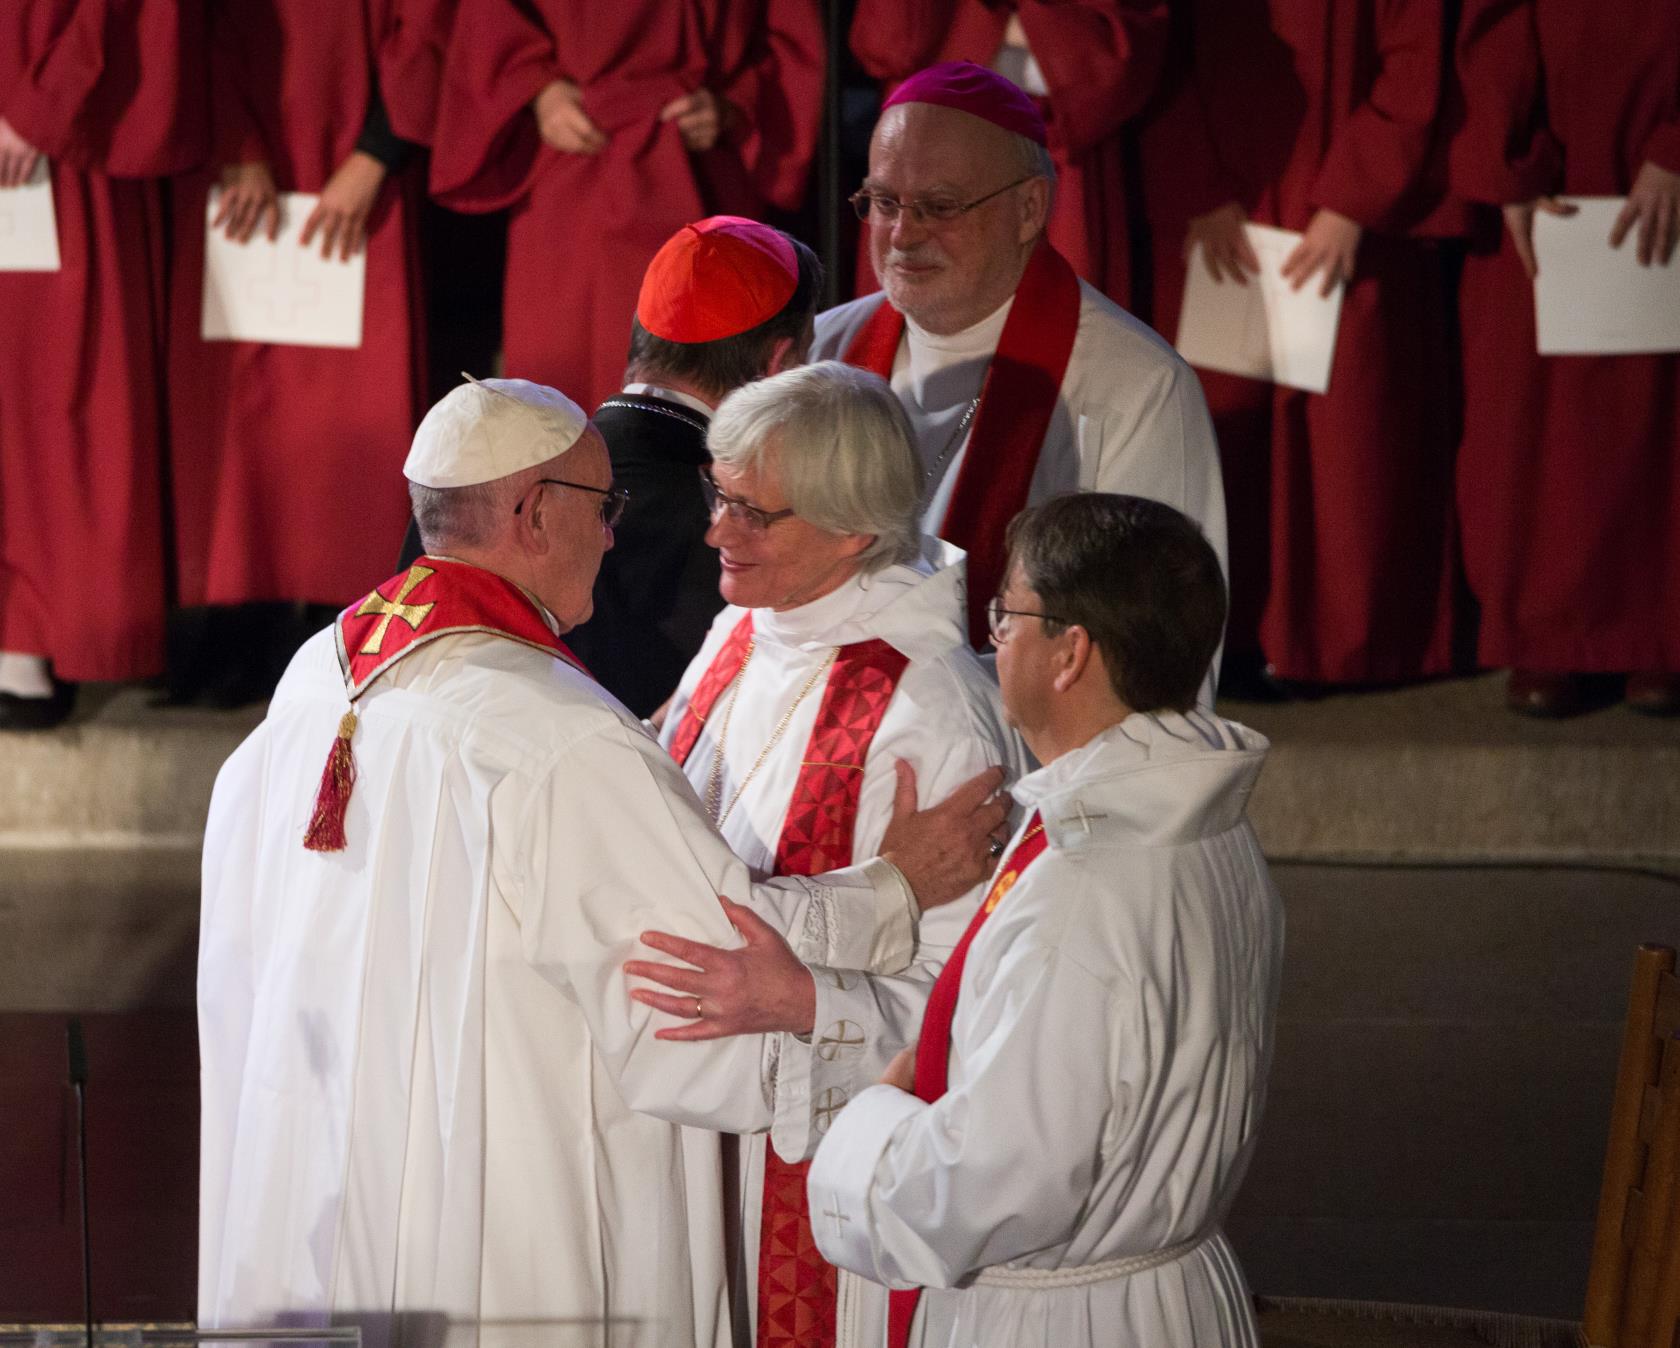 Ärkebiskop Antje Jackelén hälsar på Påven Francis. Flera andra biskopar hälsar på varandra.